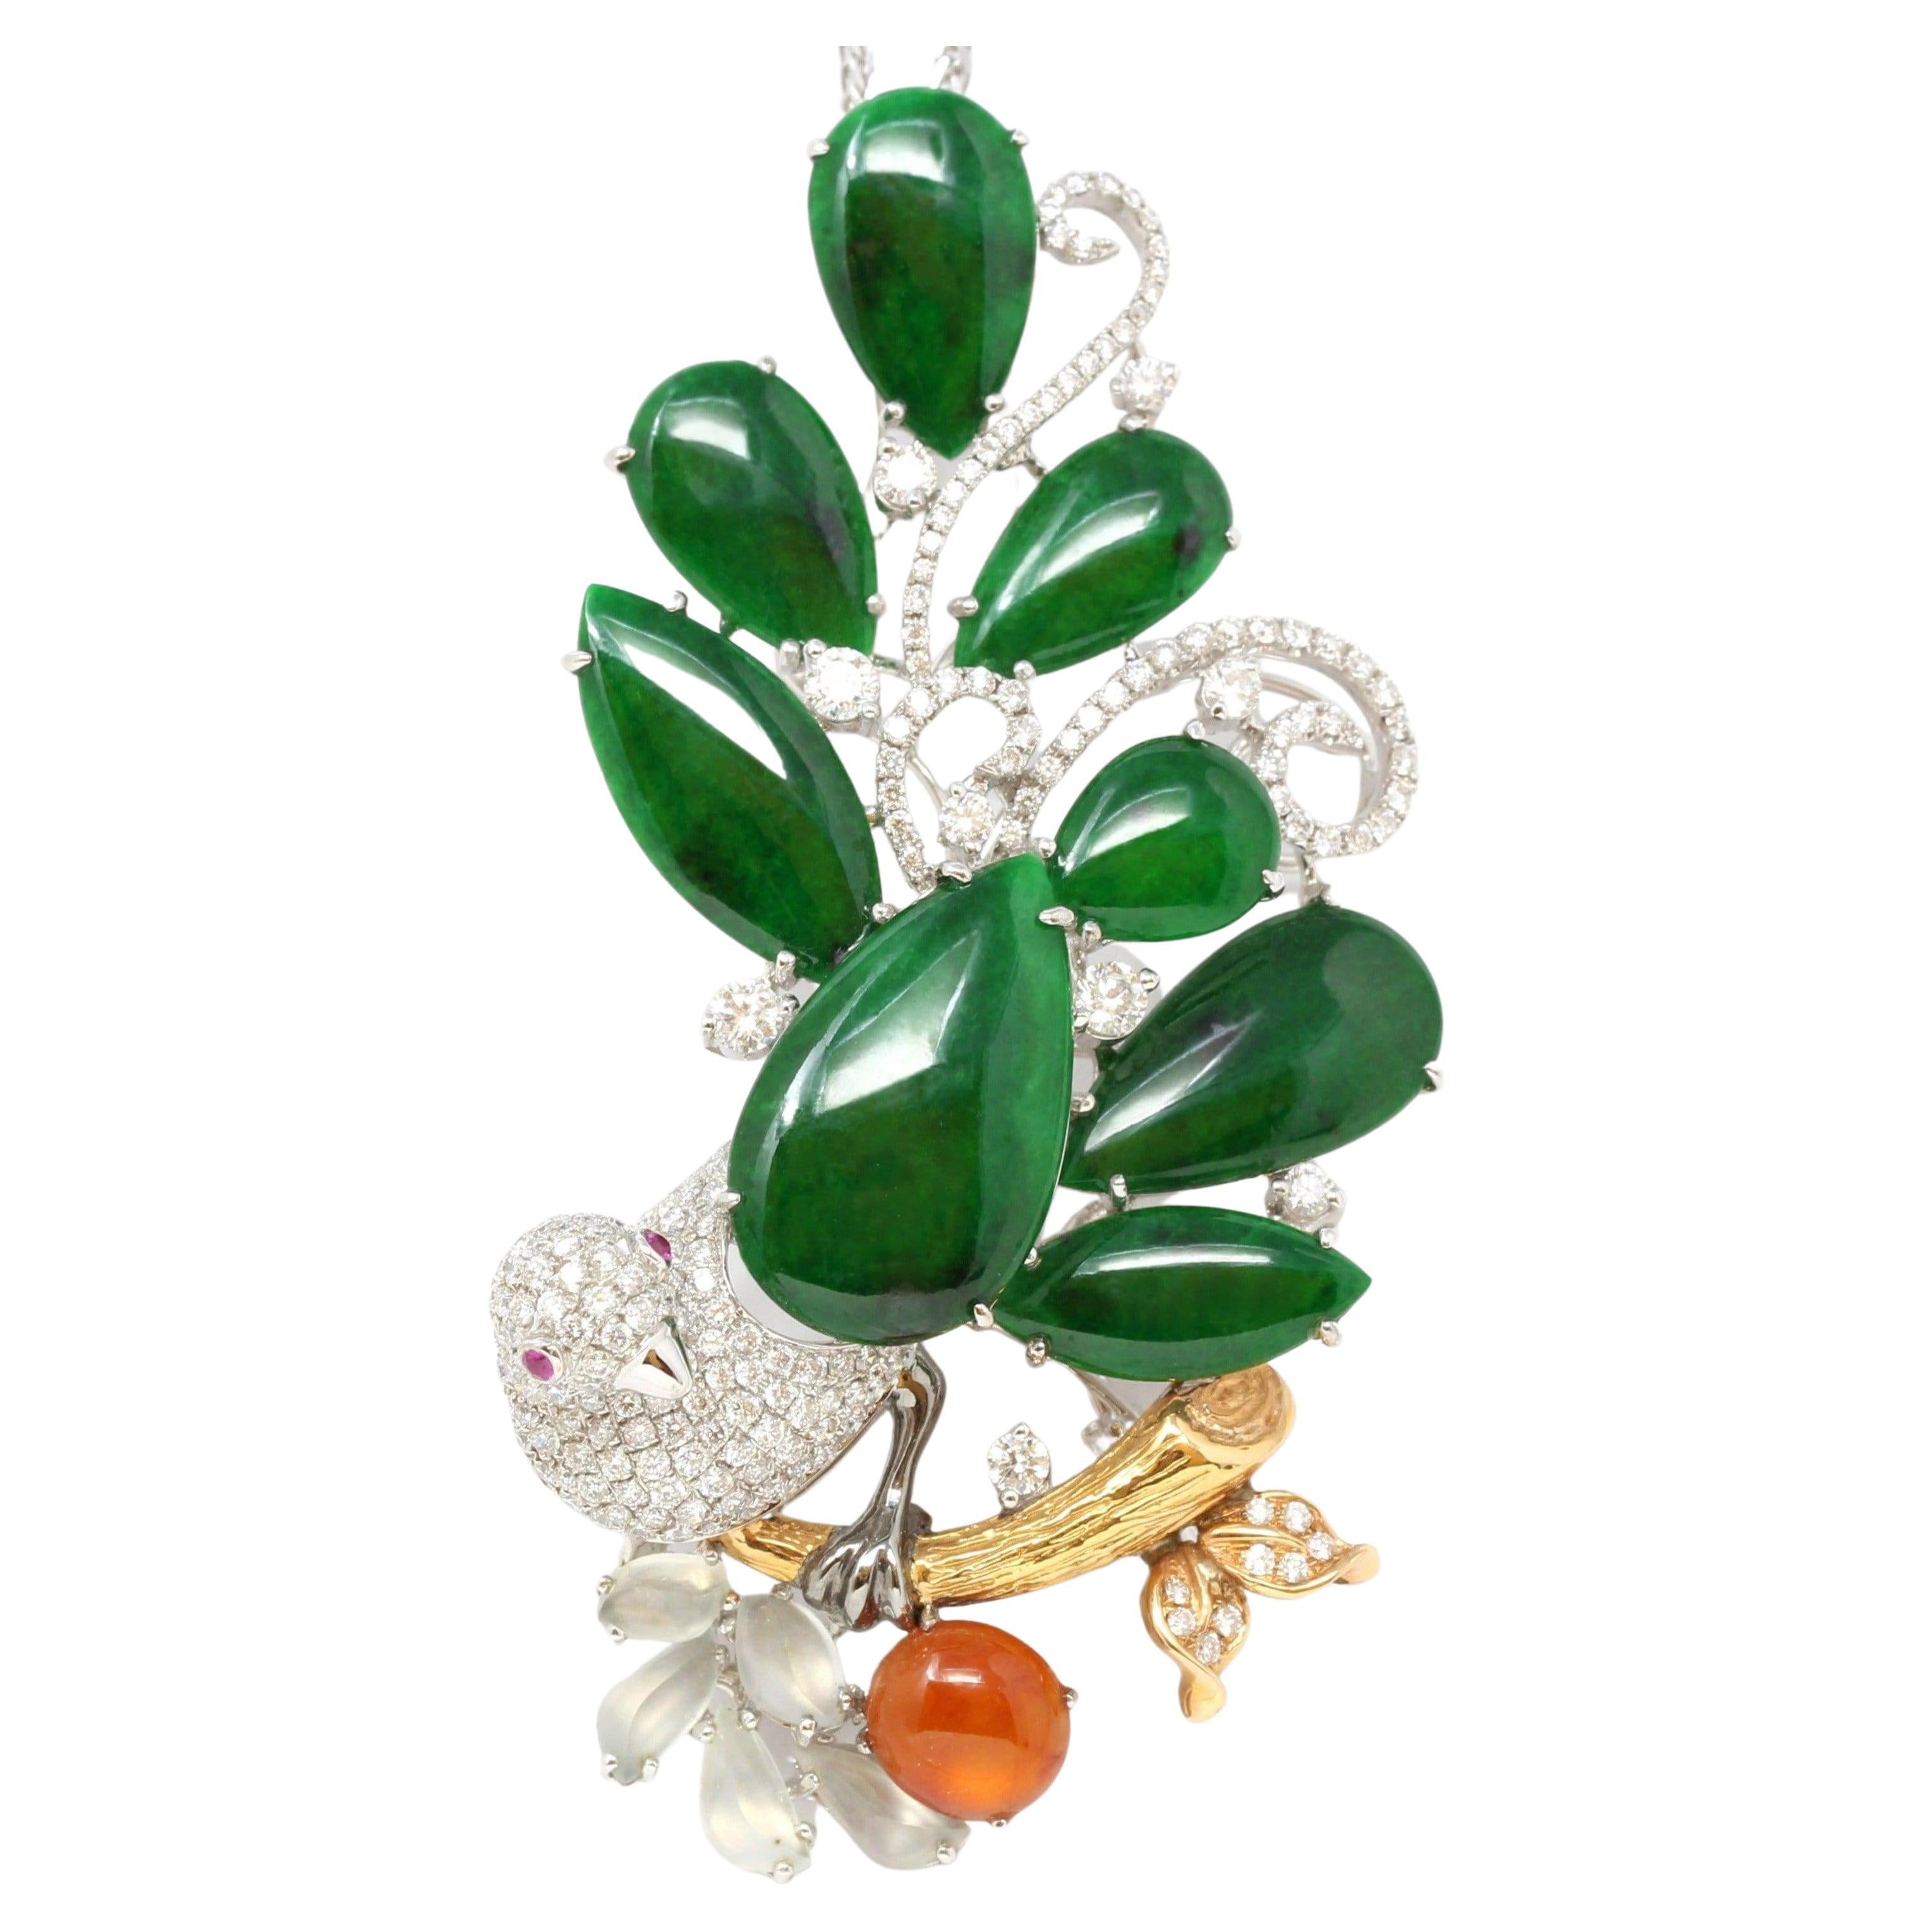 "Vogel auf einem Baum" RealJade Co. Signatur Old Mine Jadeit Brosche Halskette aus Jadeit